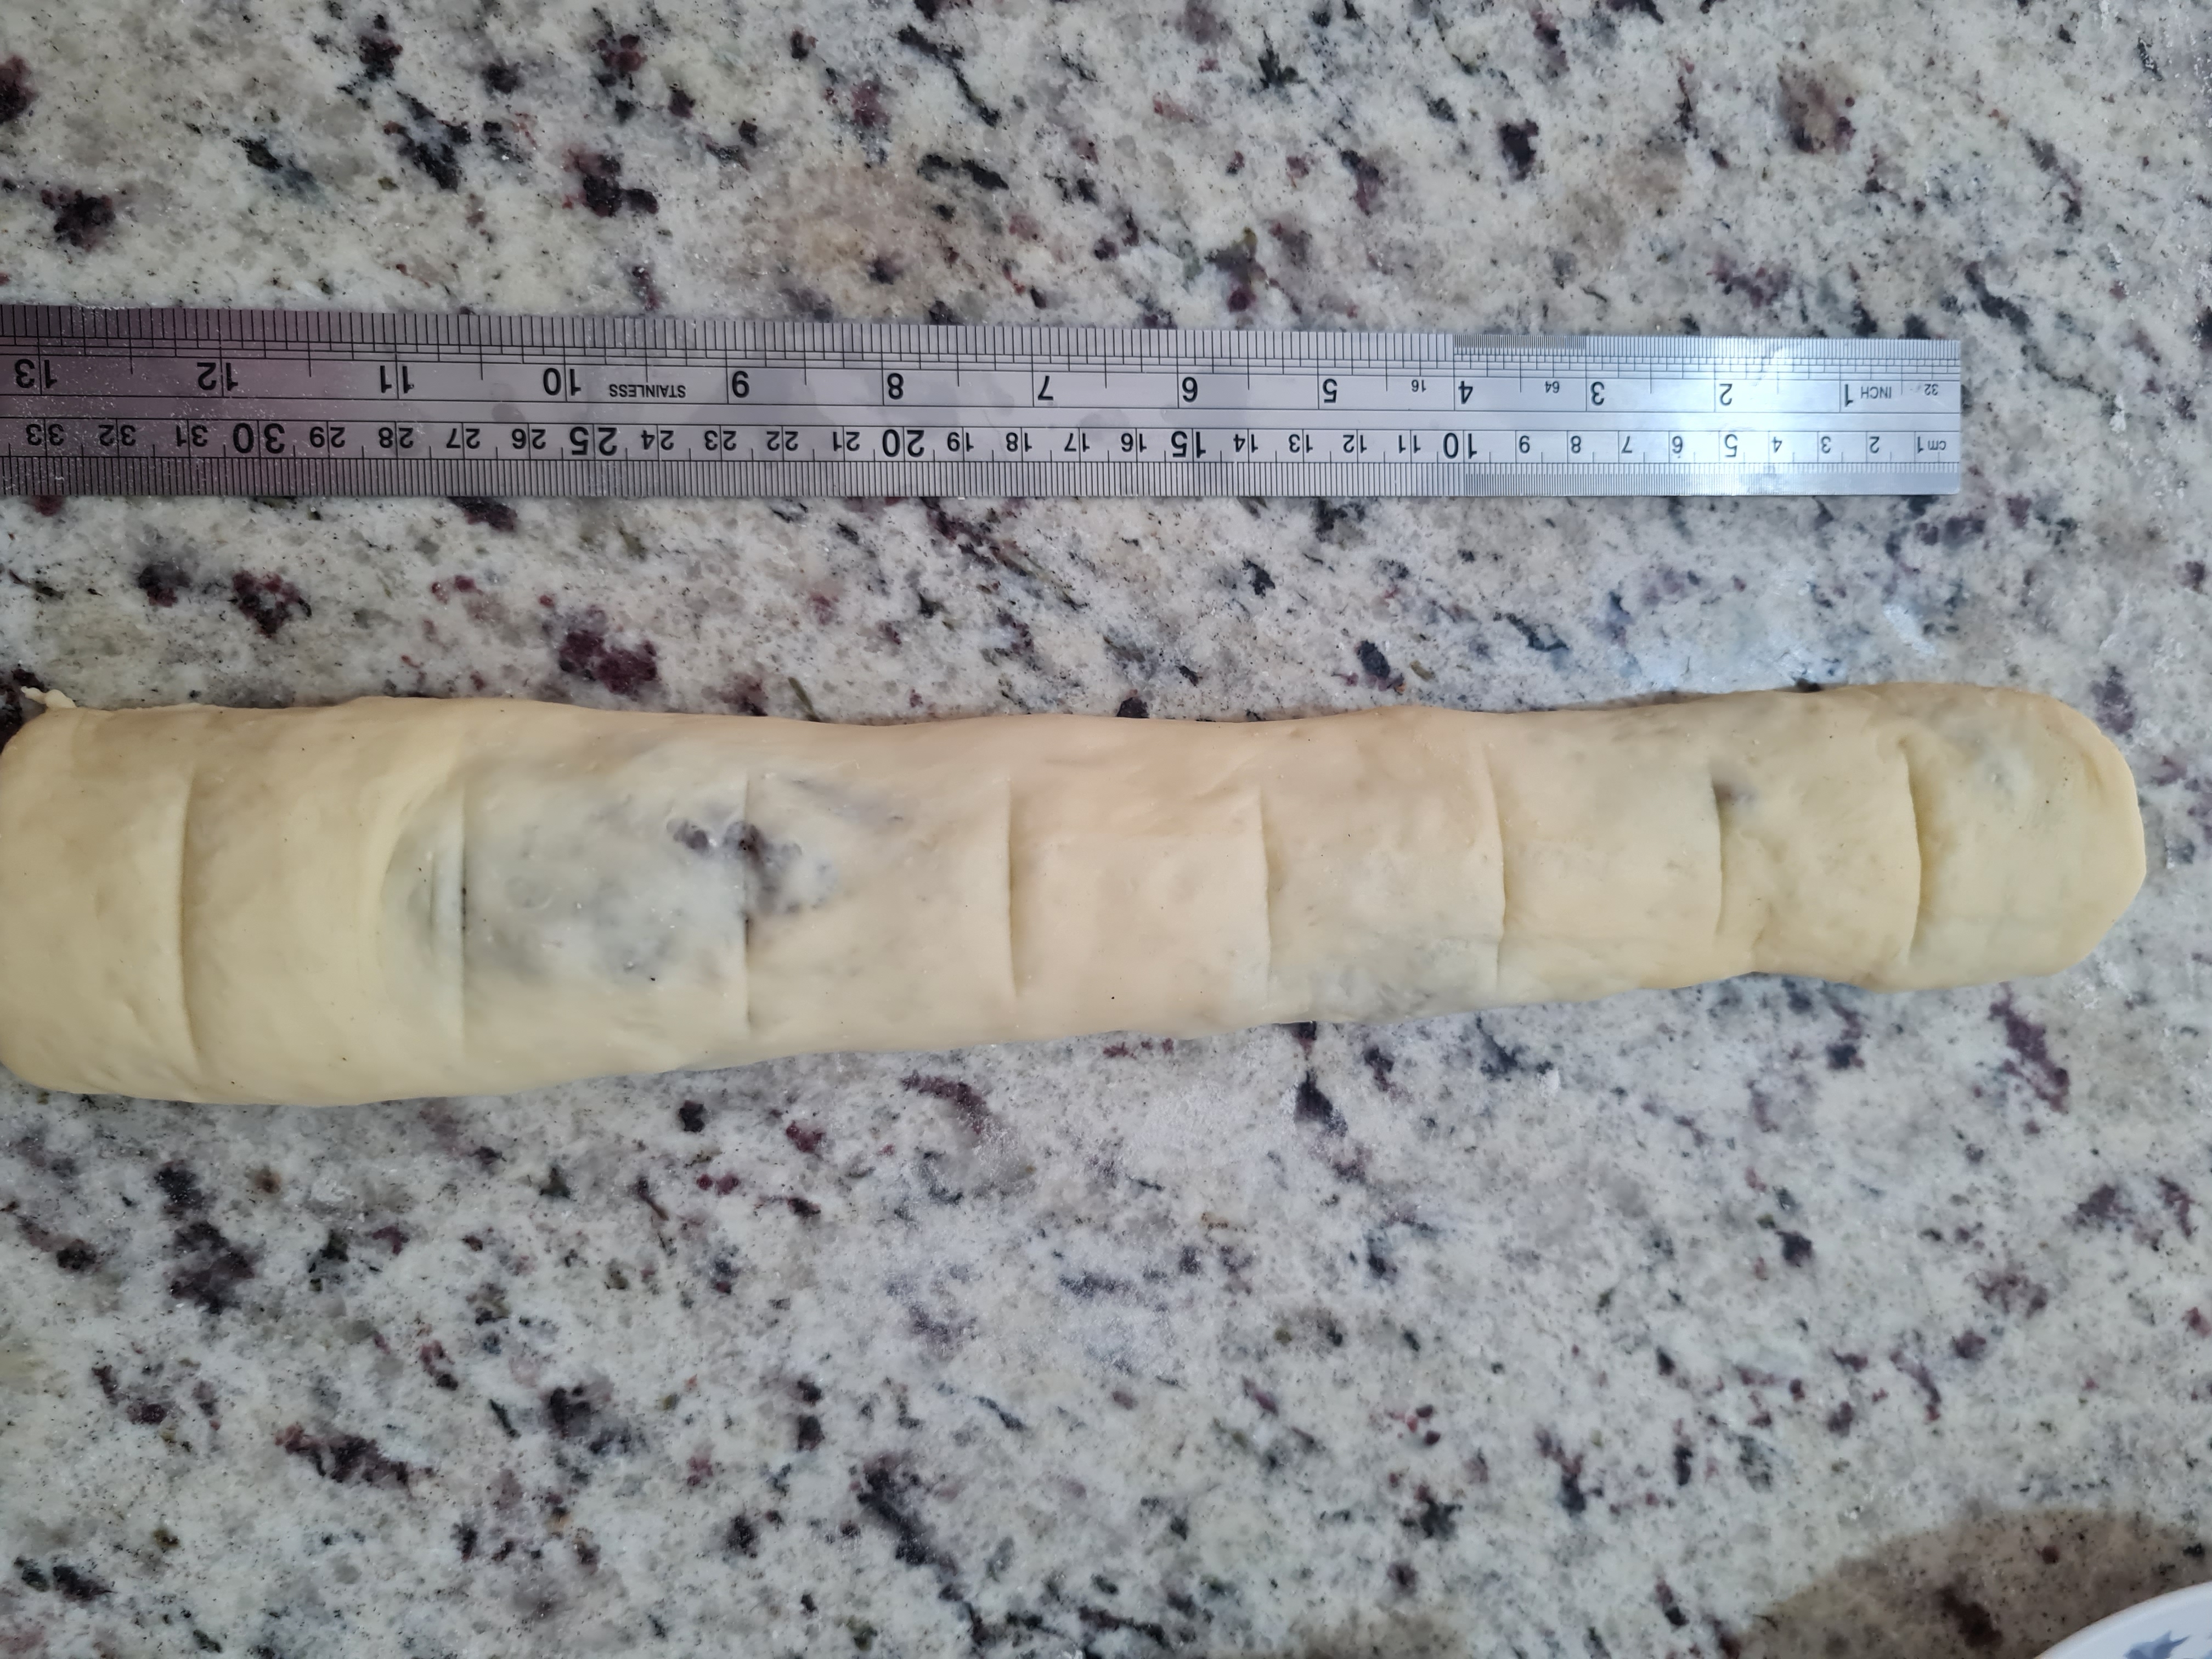 medida e corte do pão